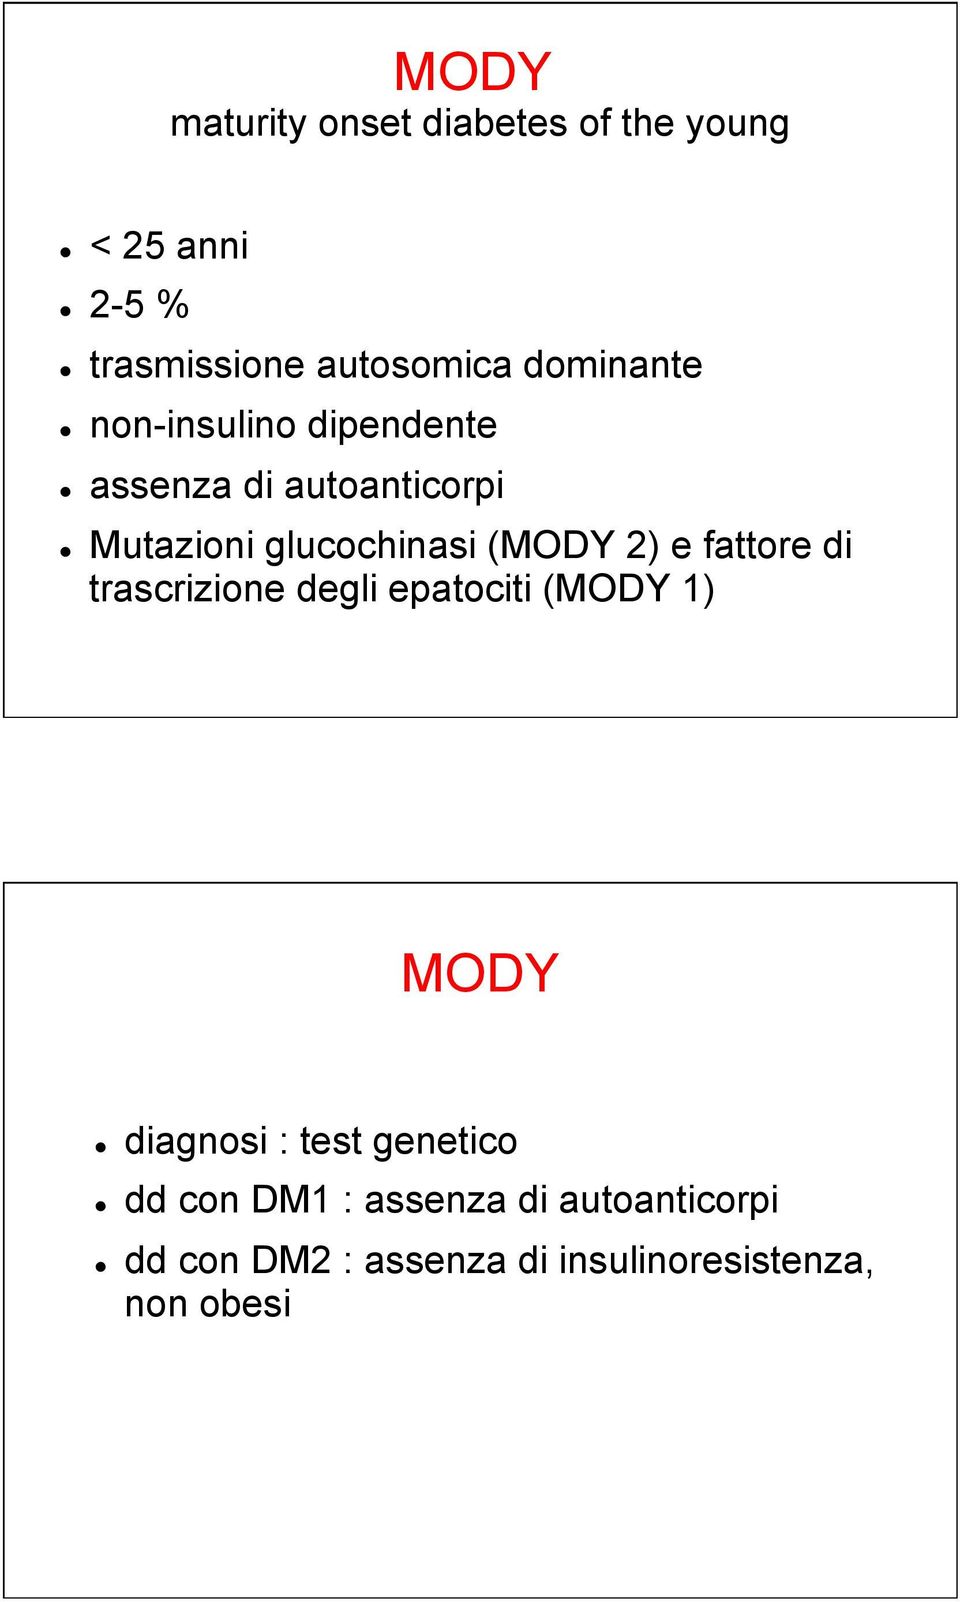 ! Mutazioni glucochinasi (MODY 2) e fattore di trascrizione degli epatociti (MODY 1) MODY!